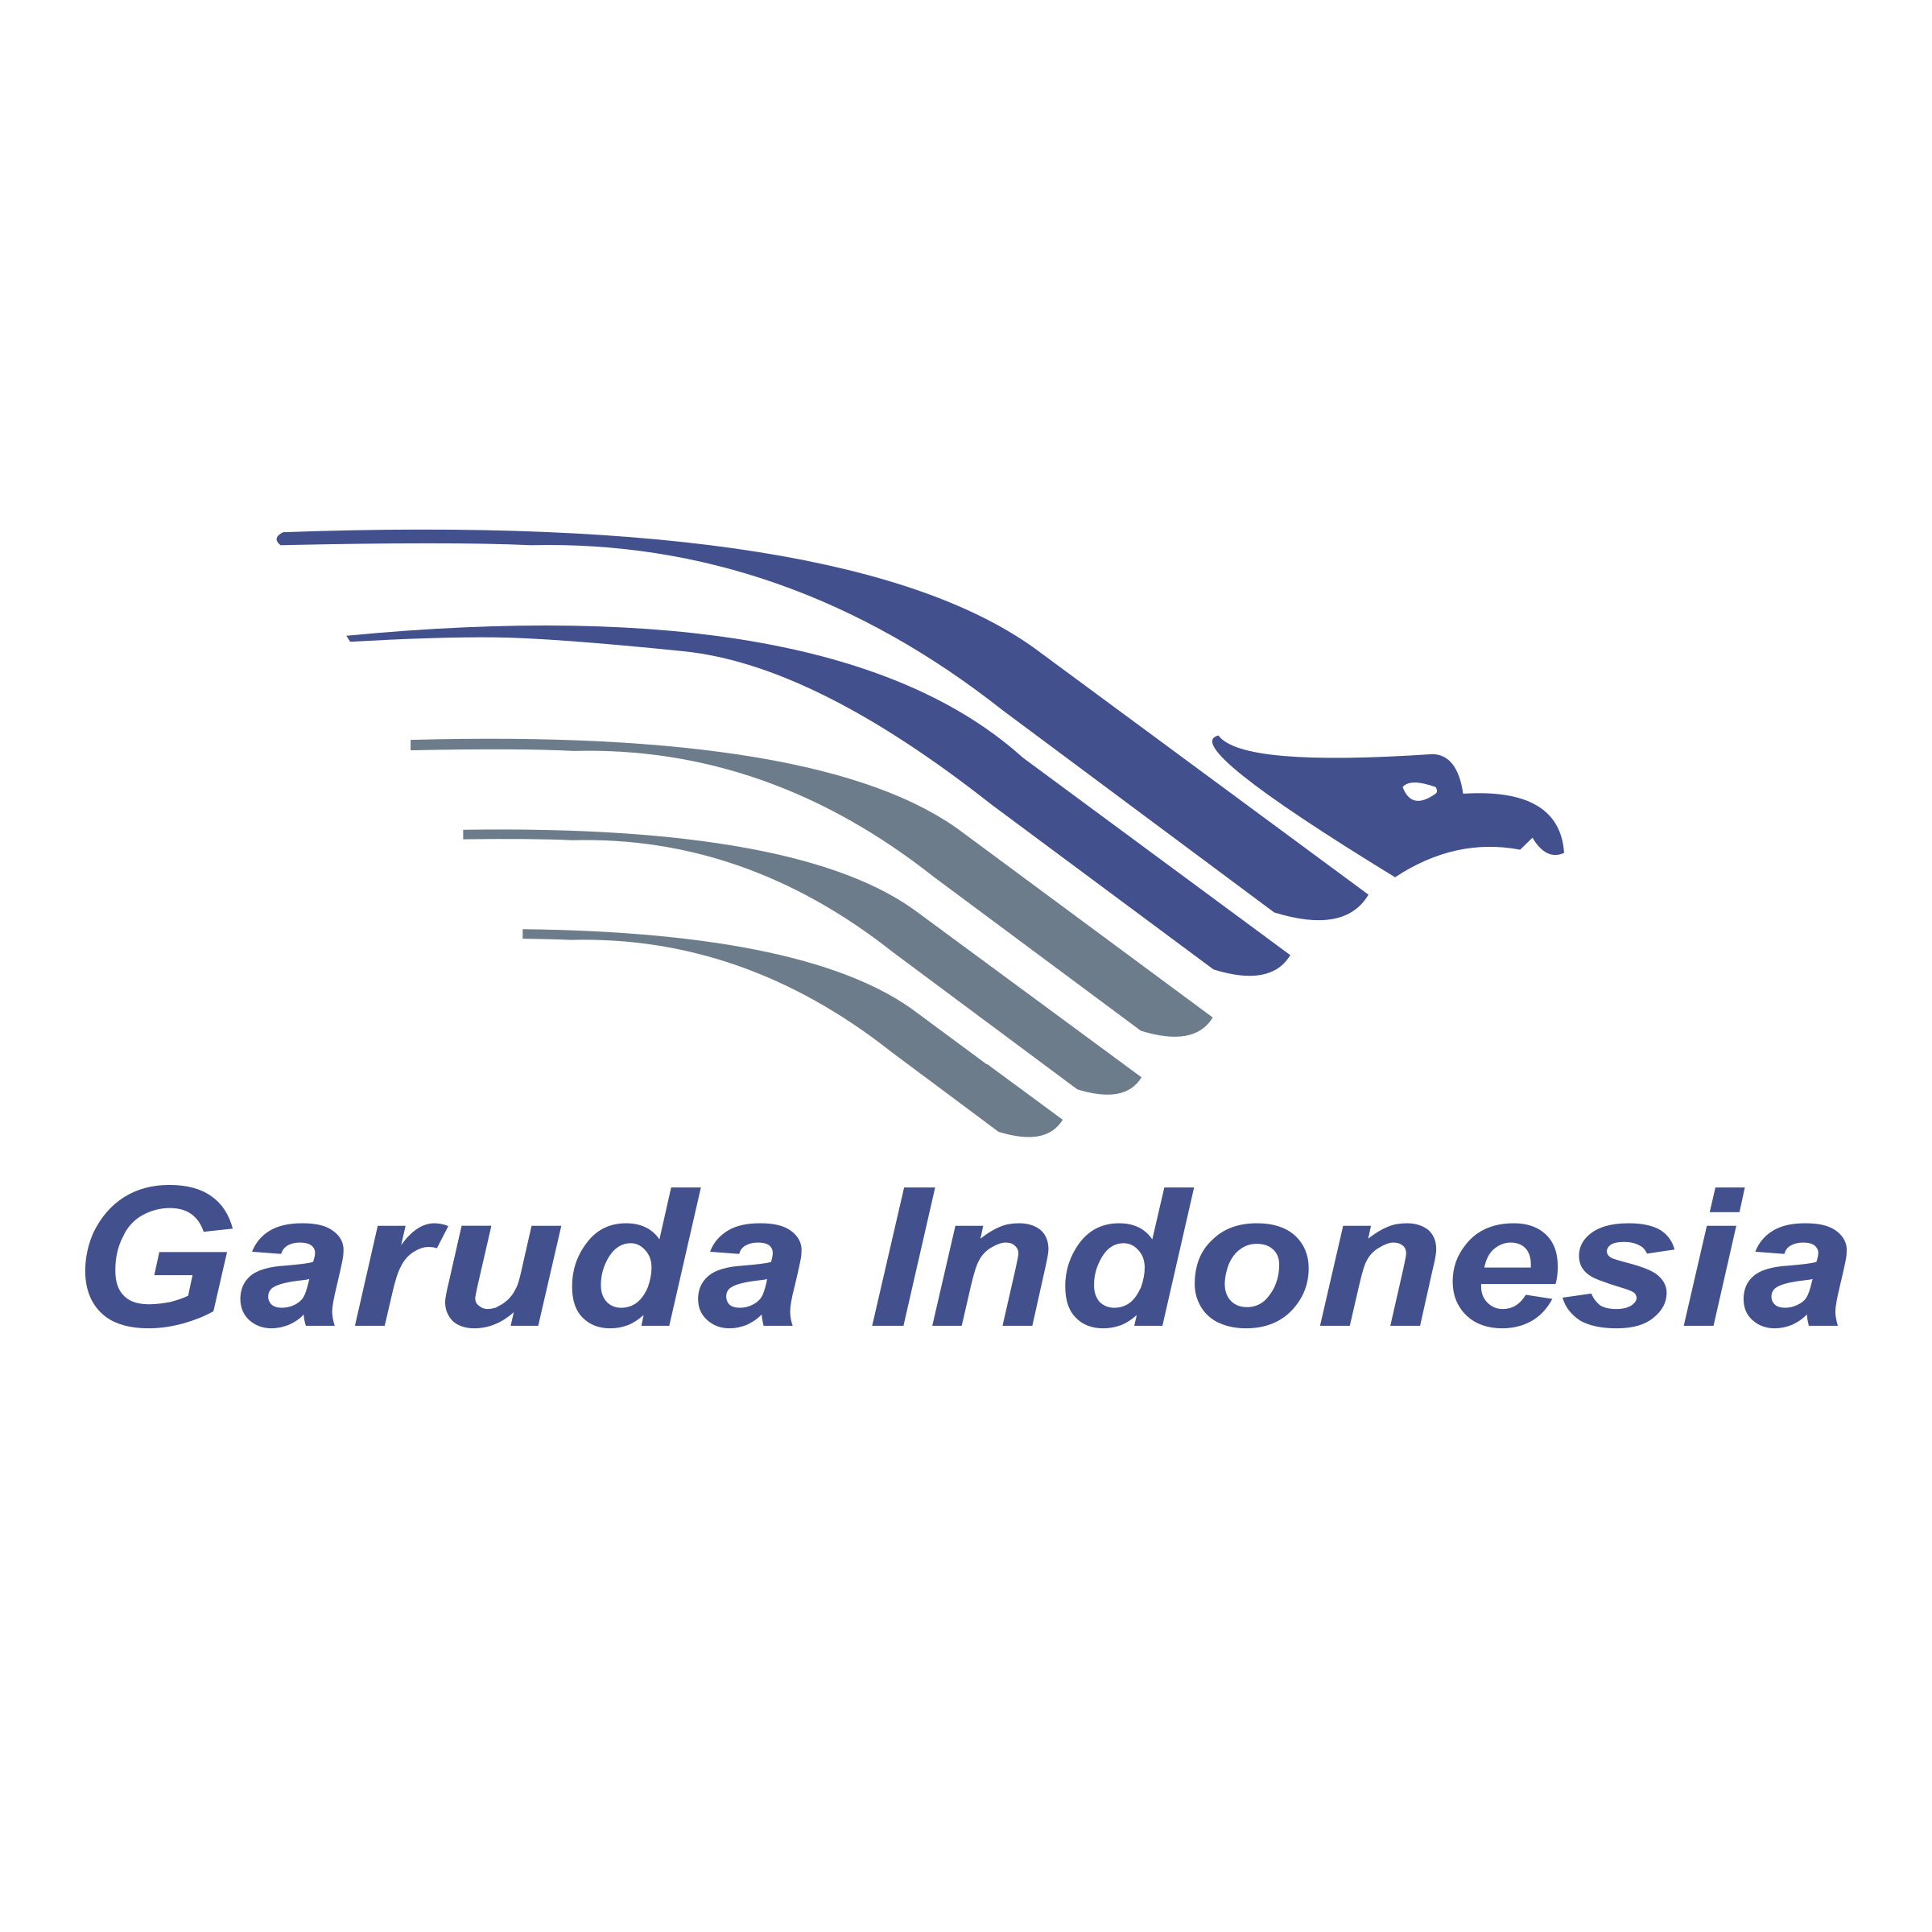 Gambar Garuda Indonesia Png - KibrisPDR